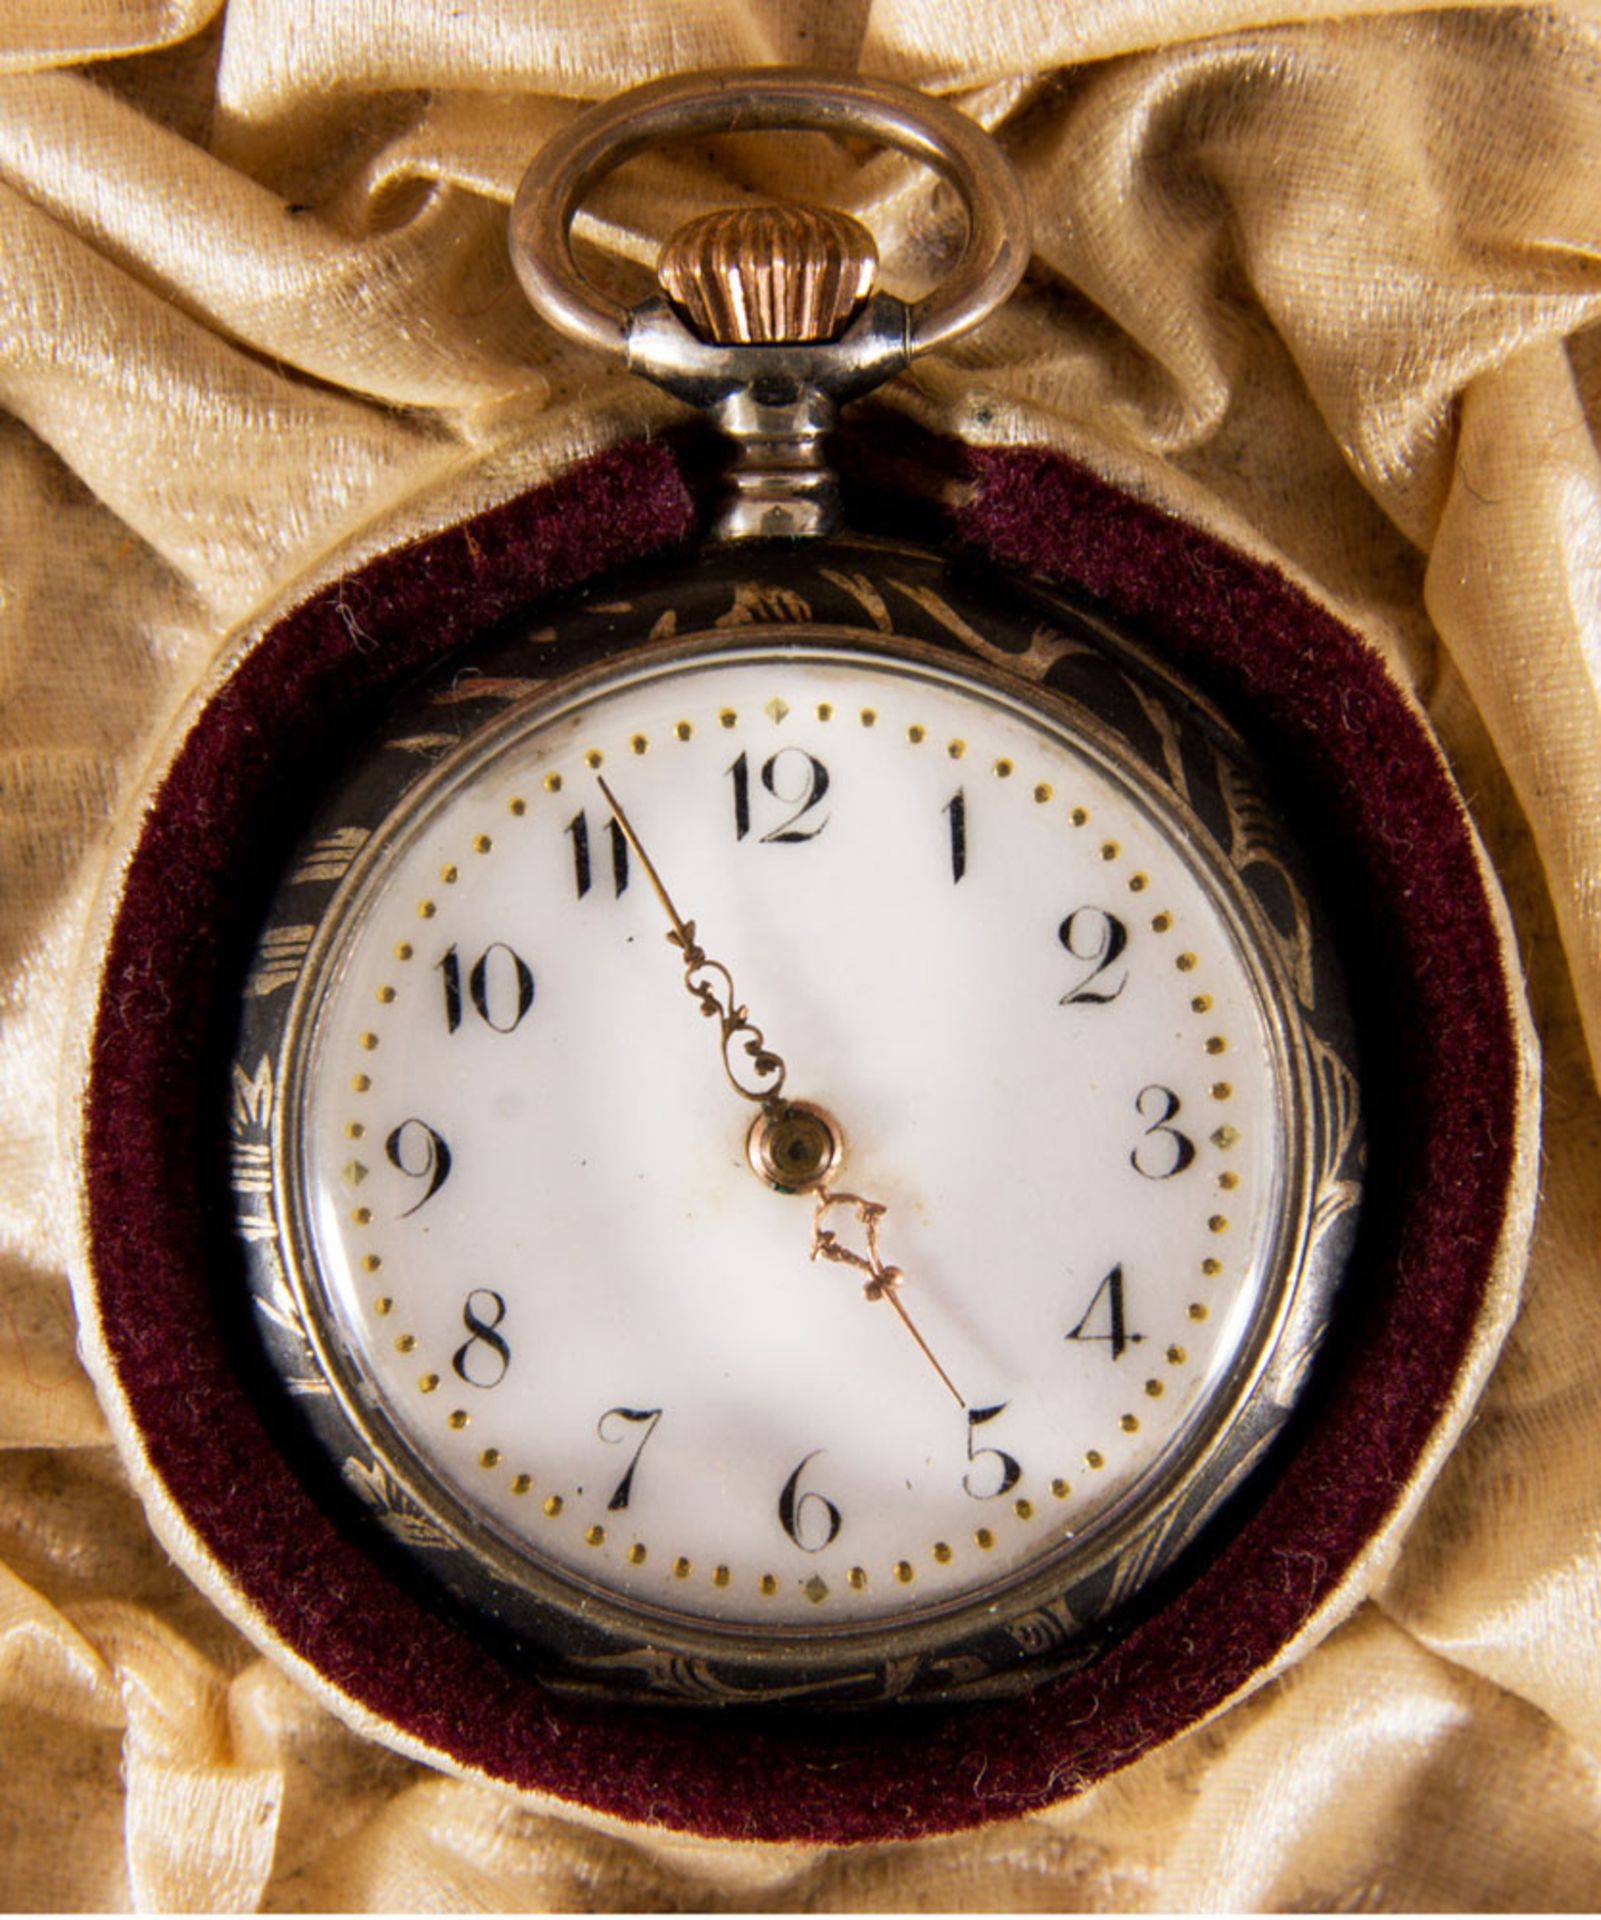 Antike Damentaschenuhr um 1900 in orig. Kartonage. Werk läuft an. Durchmesser ca 30mm.